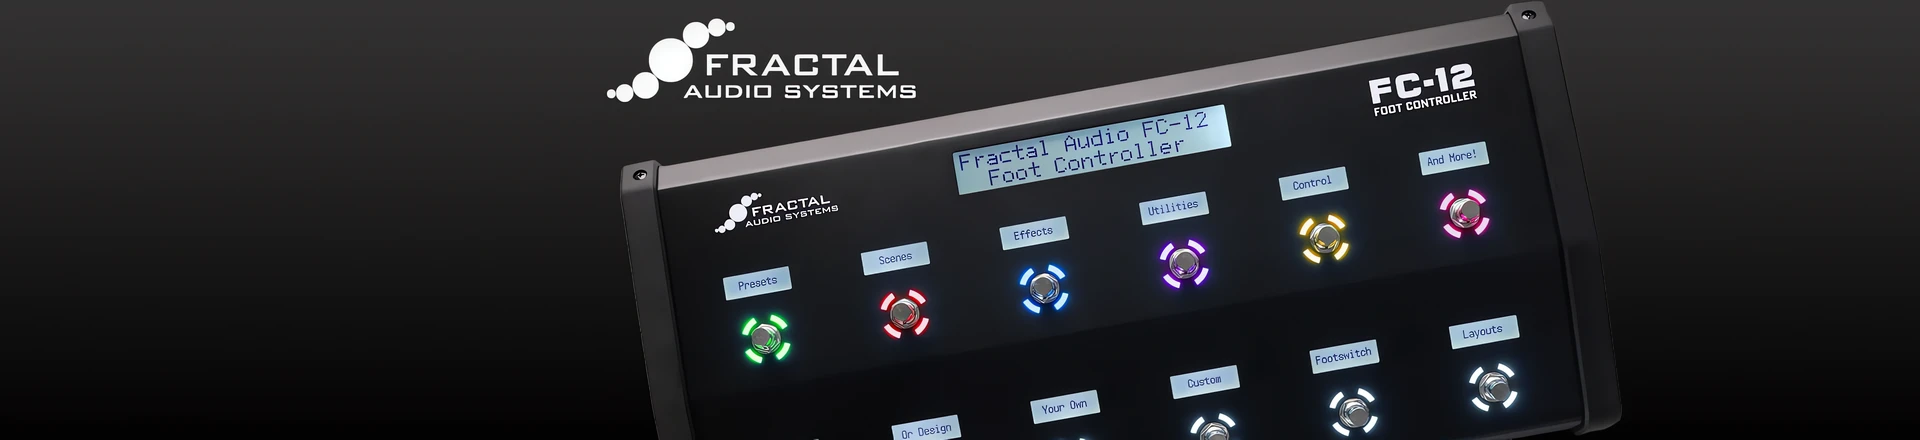 Mniej znaczy więcej - Fractal prezentuje nowe kontrolery. 